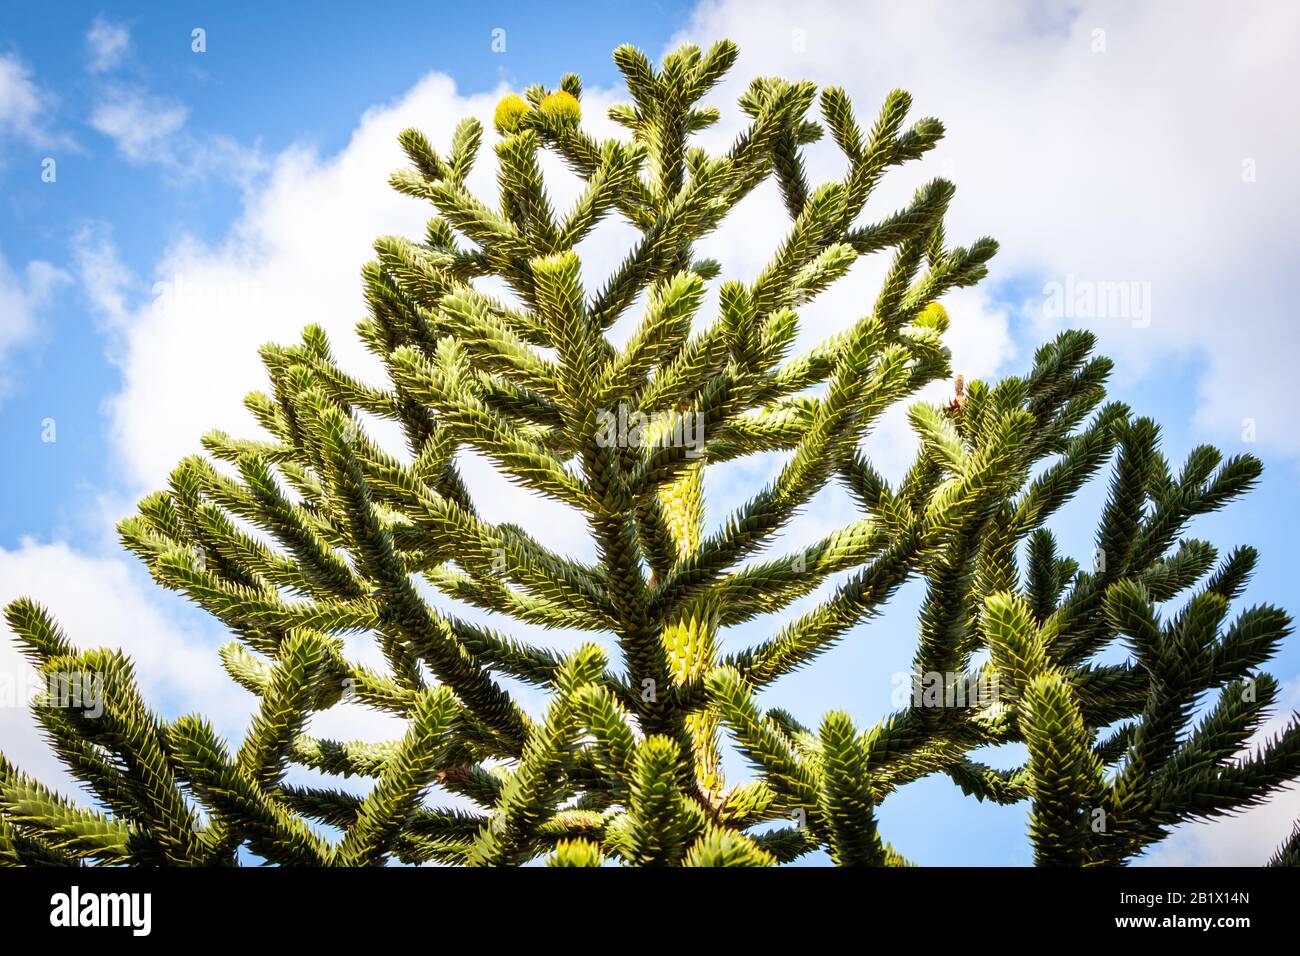 Araucaria araucana comúnmente llamado el árbol del rompecabezas del mono, árbol de la cola del mono, piñonero, o pino chileno Foto de stock